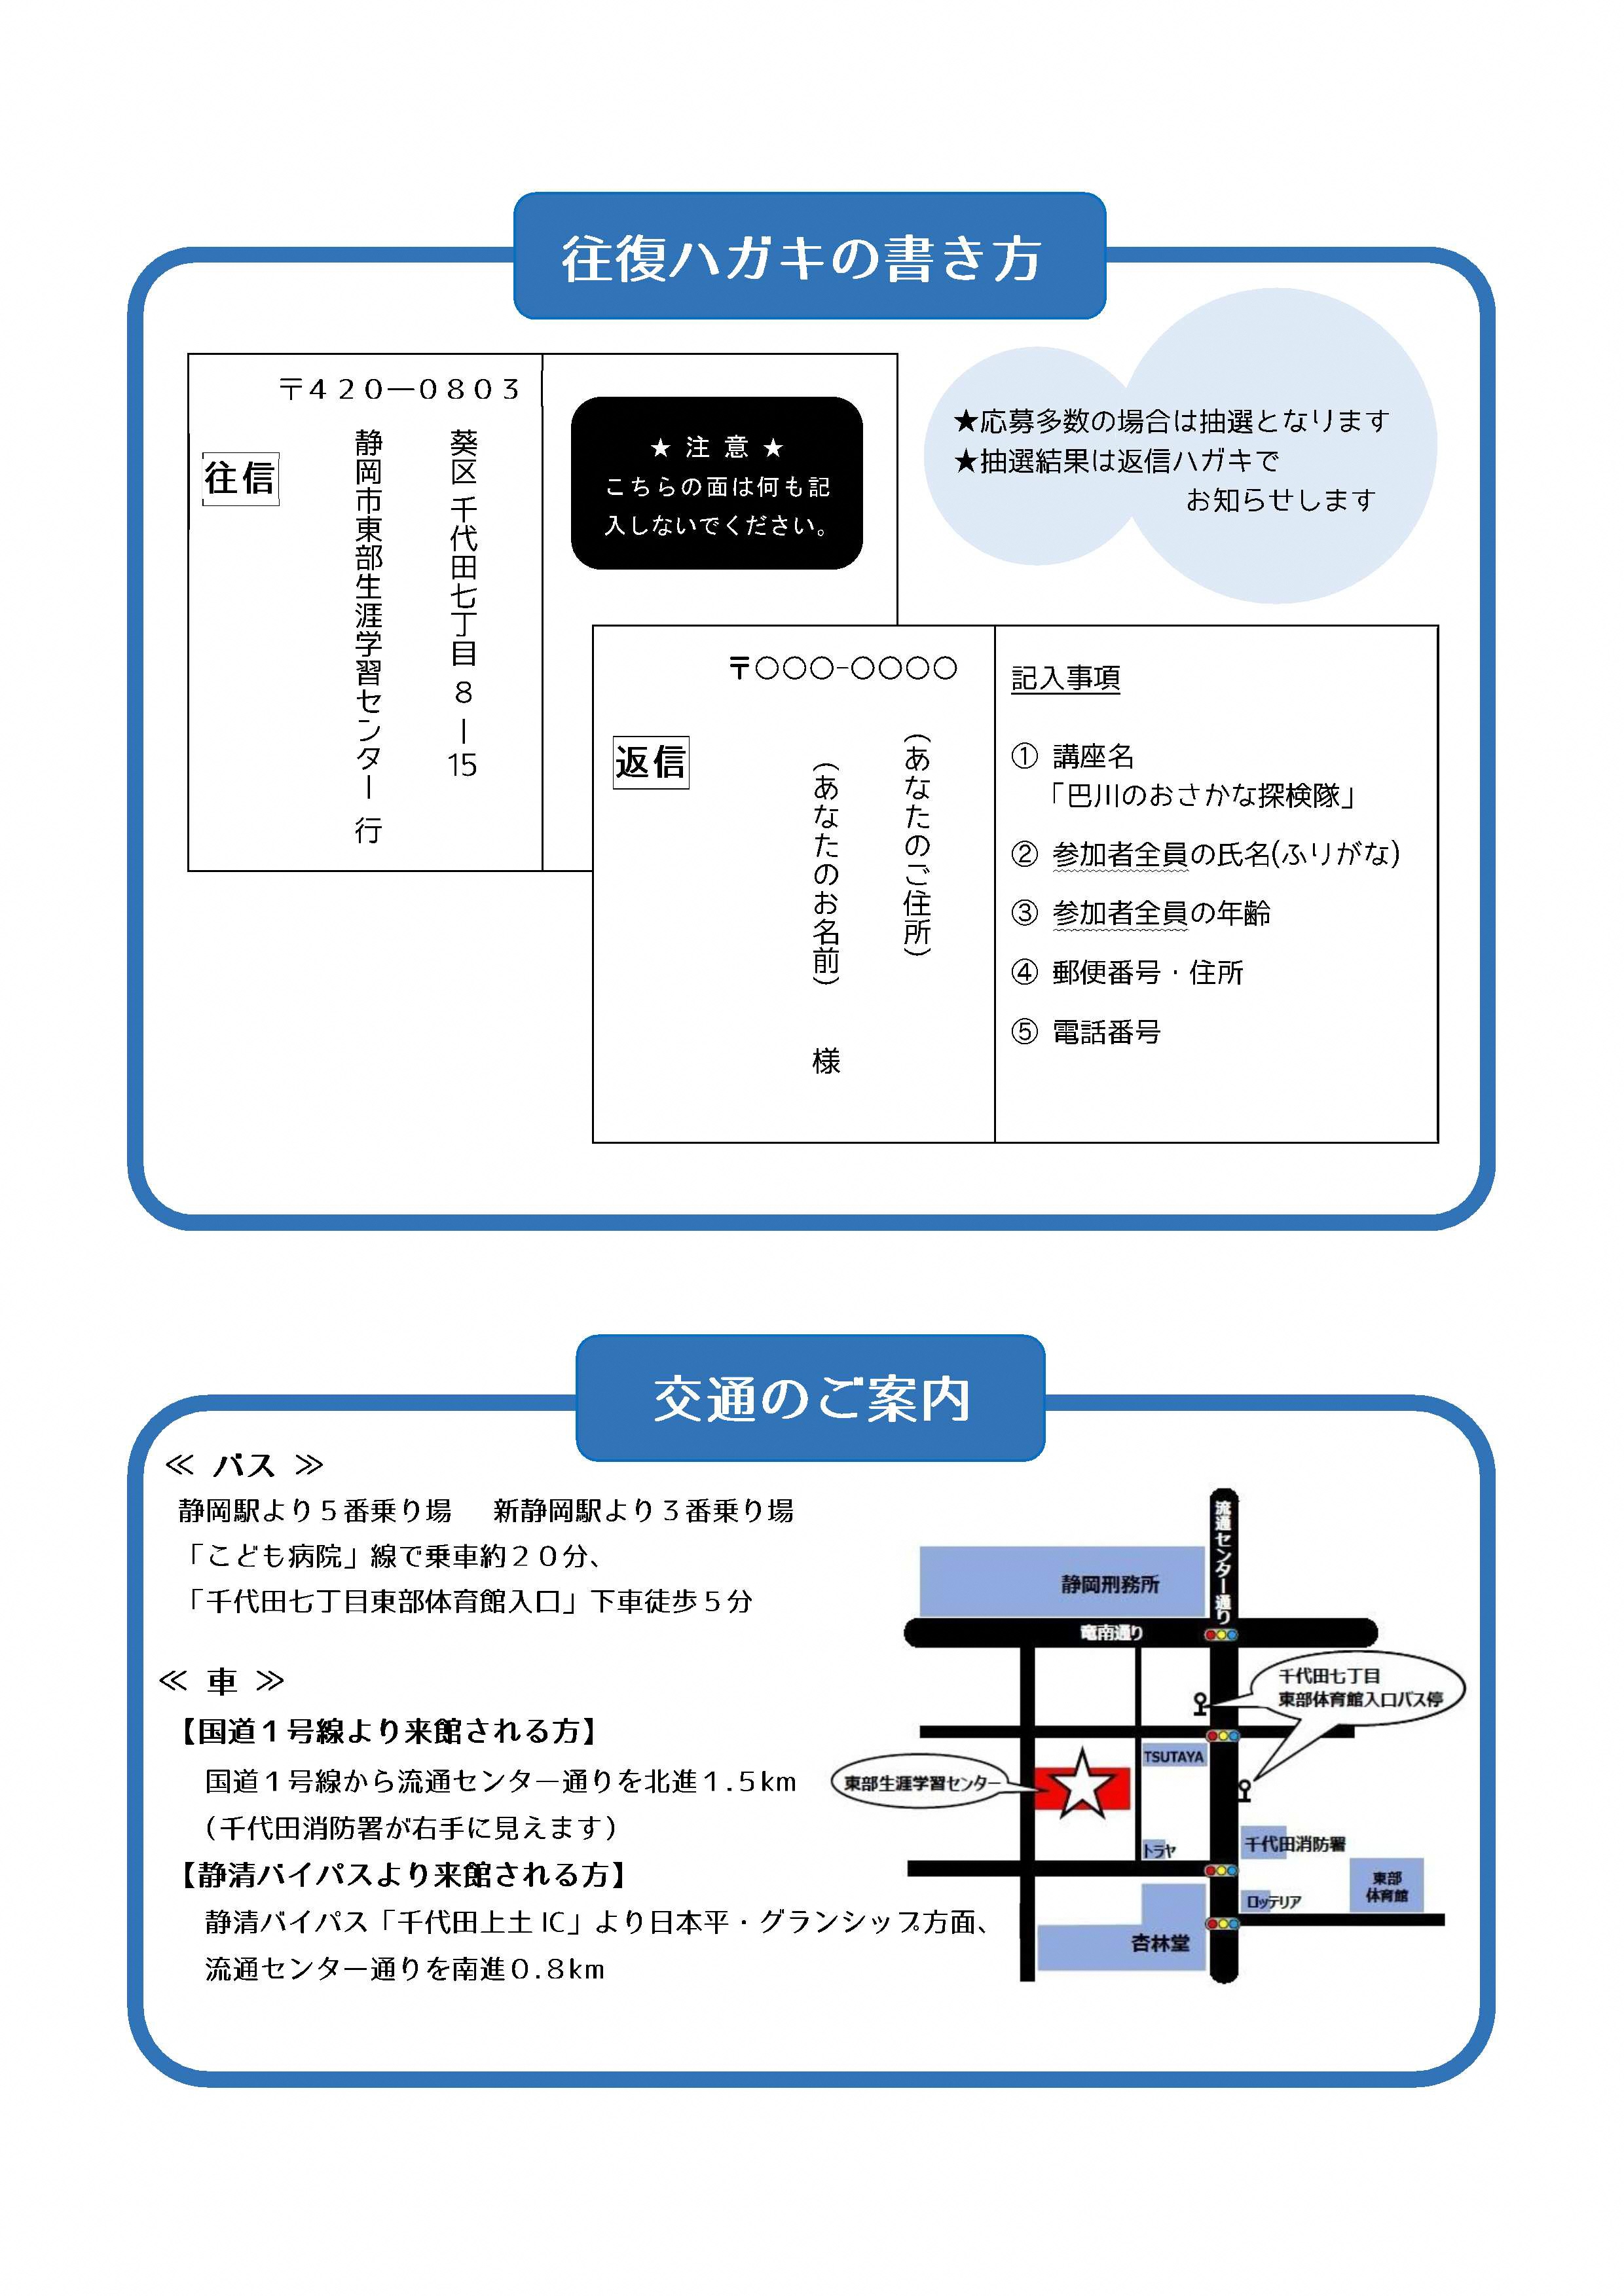 https://www.shizutan.jp/learning/2019/04/26/images/%E3%83%81%E3%83%A9%E3%82%B7%E2%97%8F%E5%B7%B4%E5%B7%9DR1-2.jpg